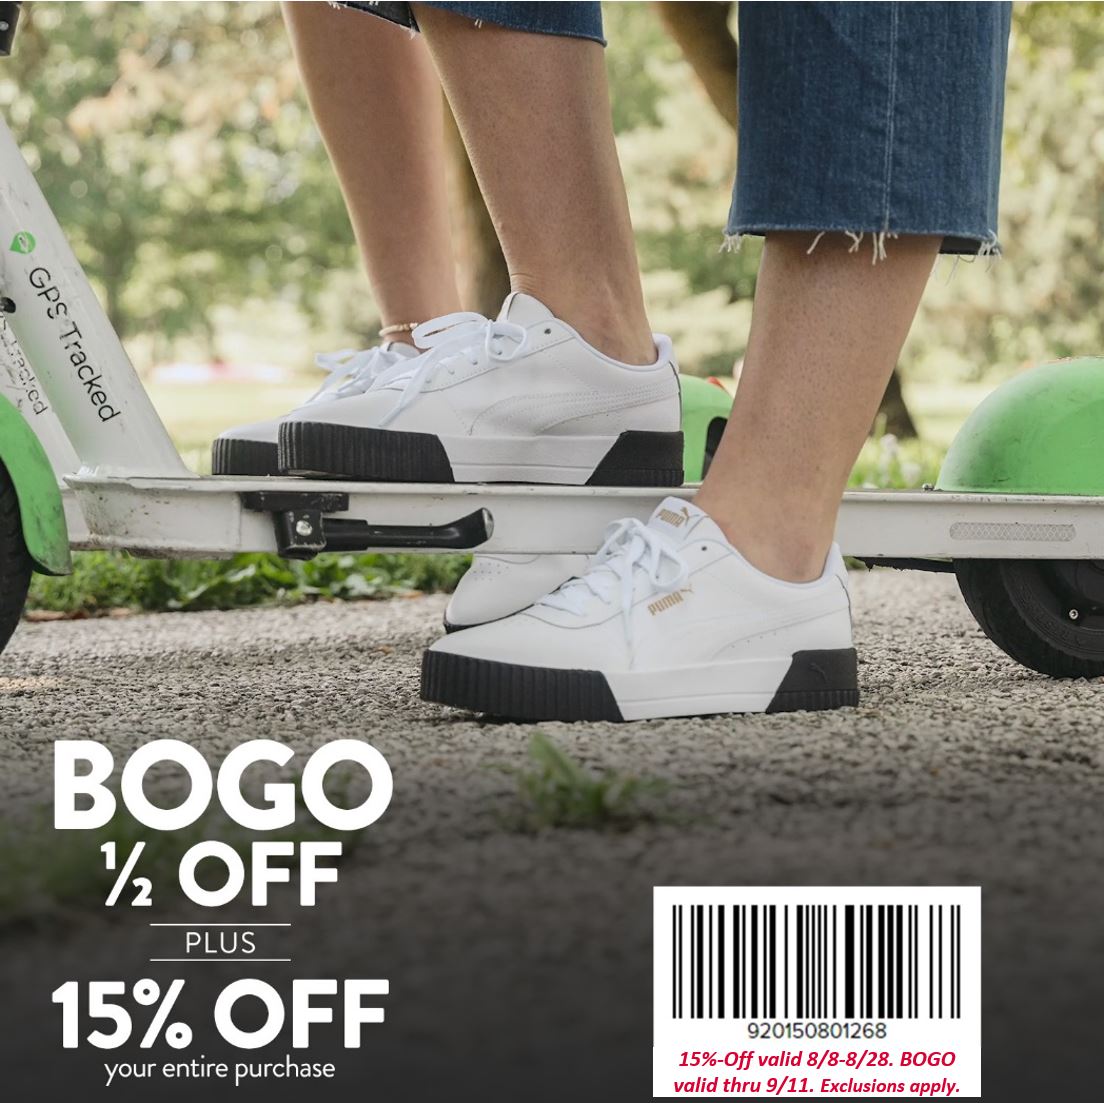 Famous Footwear - Back to School Offer! 15% Off + BOGO ½ Off